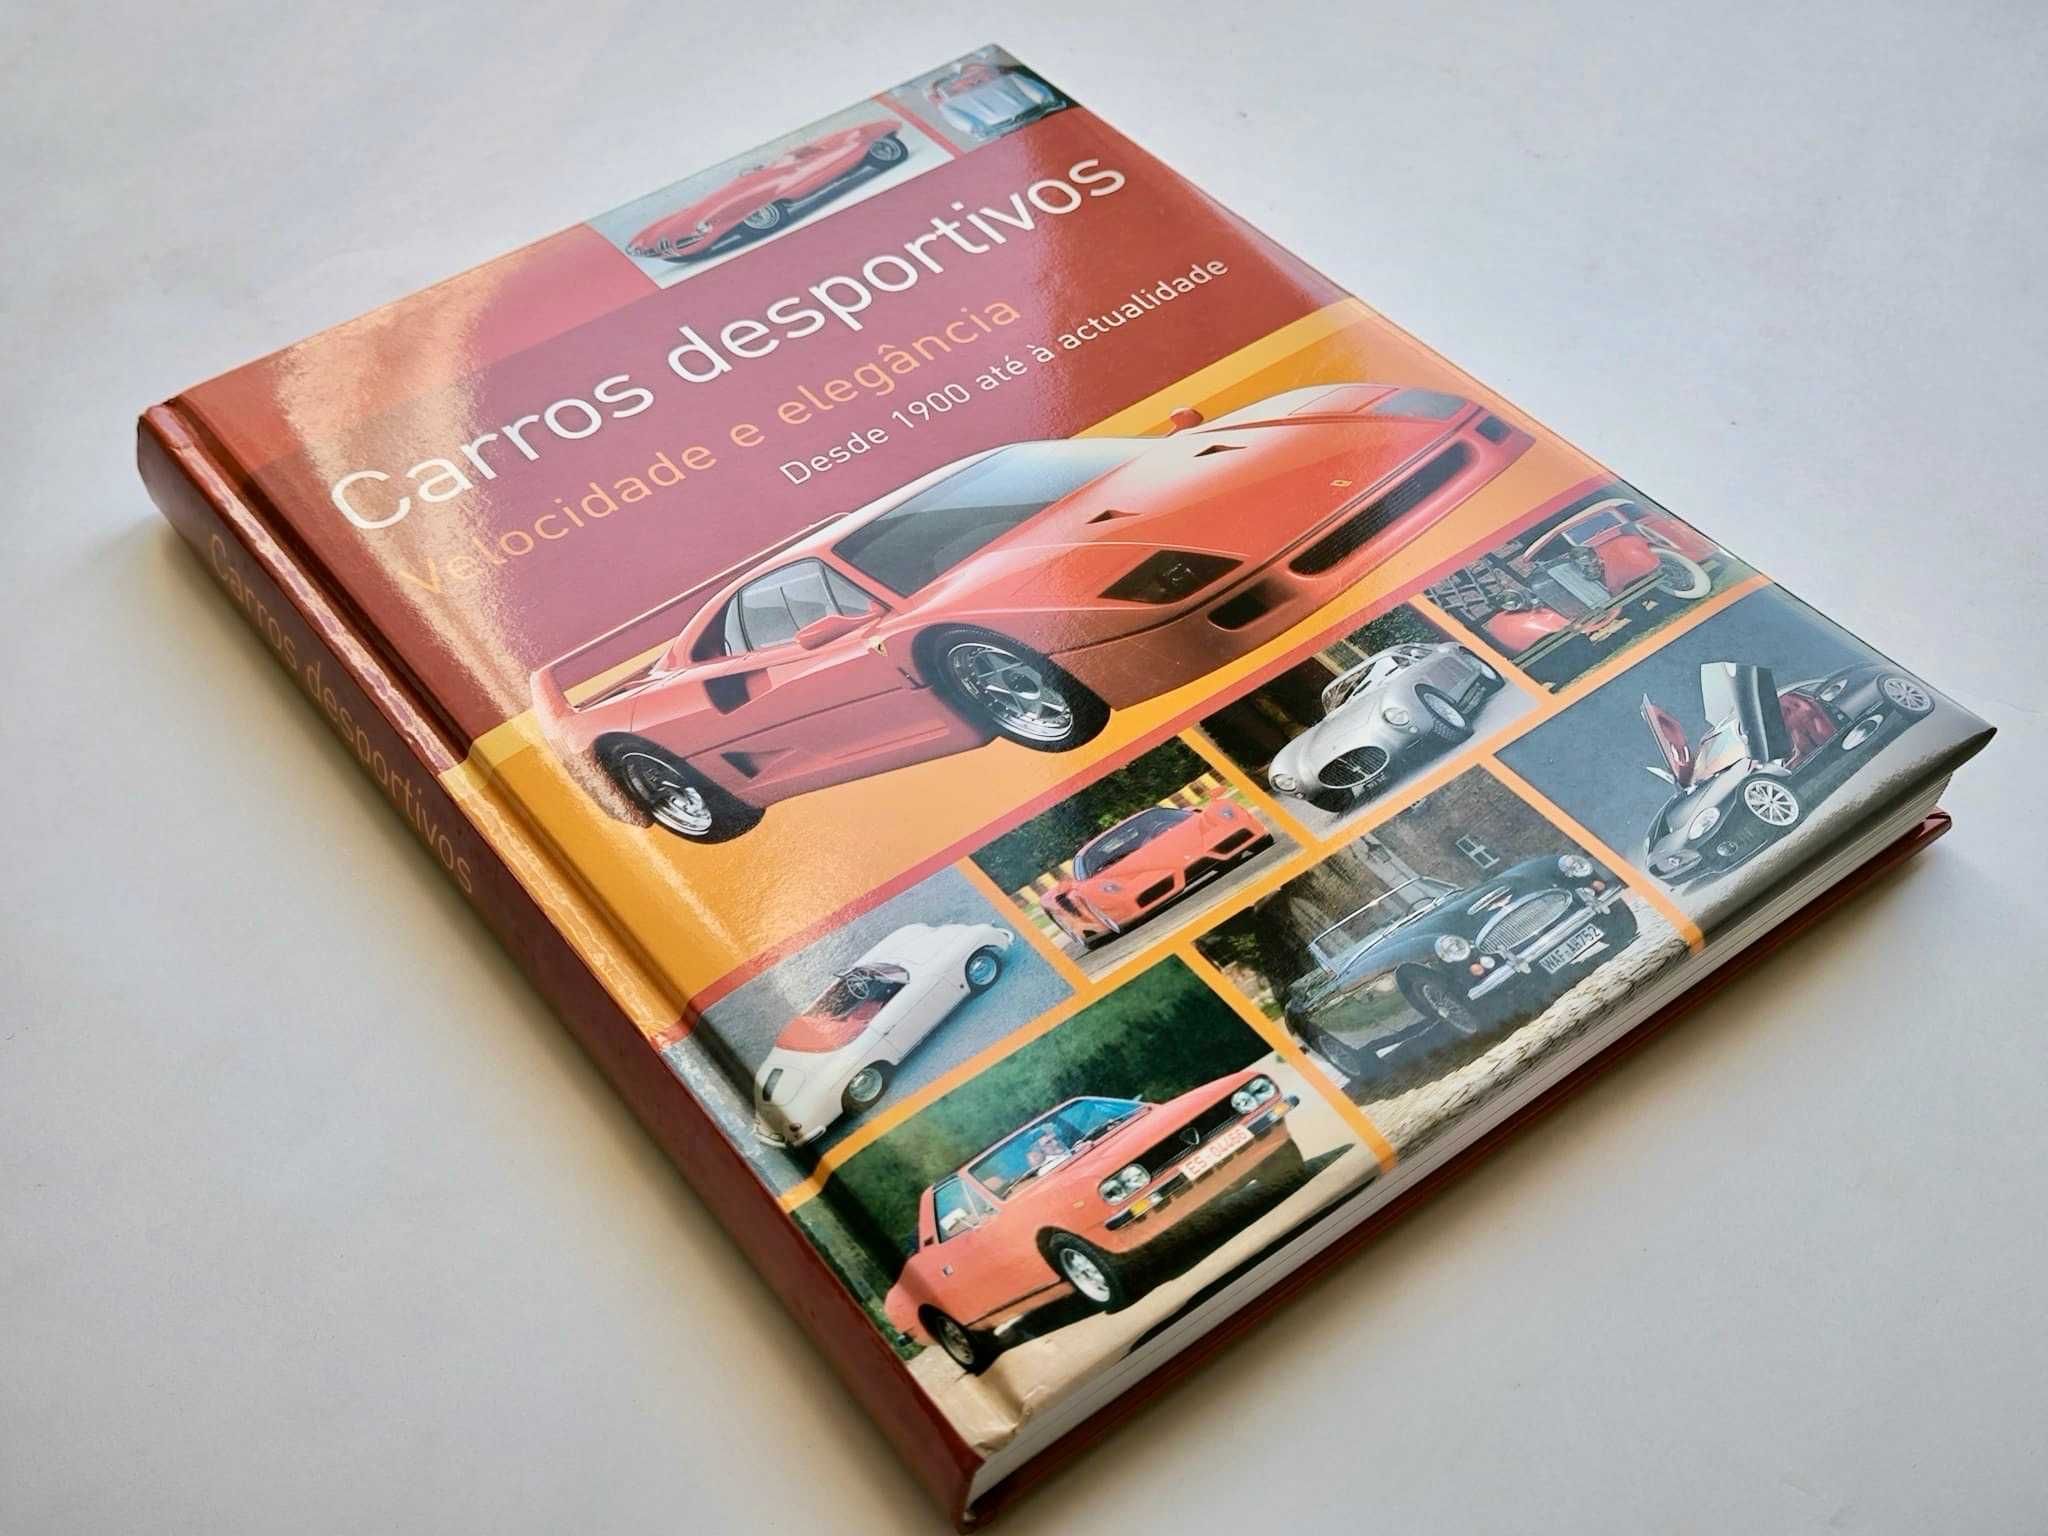 Livro "Carros Desportivos * Desde 1900 até à Actualidade"